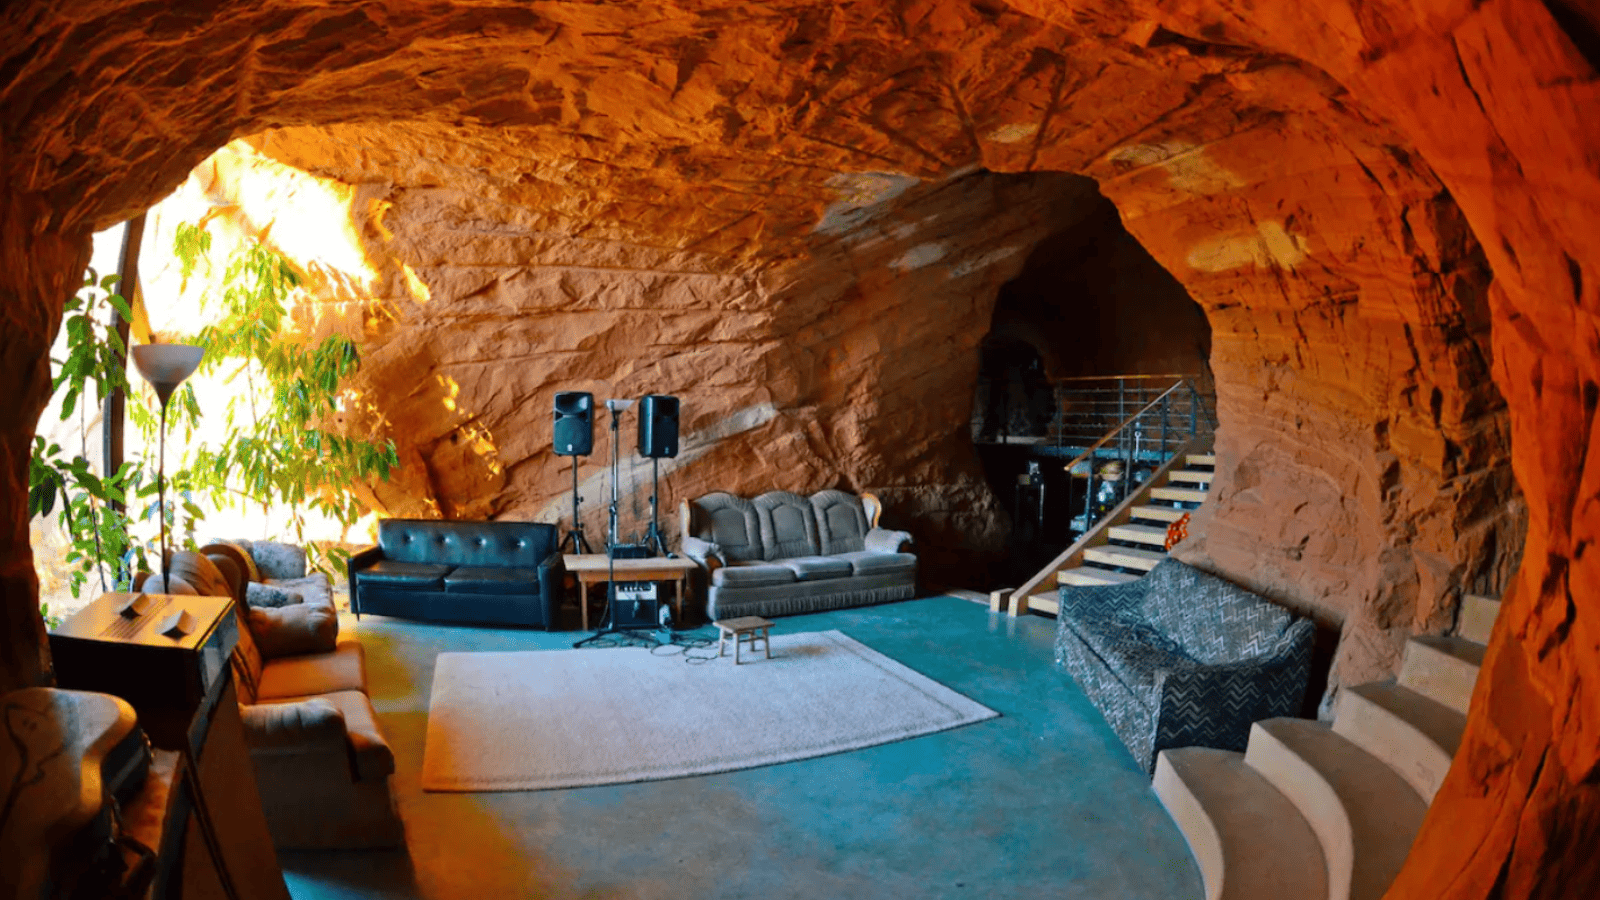 Bedrock Cave